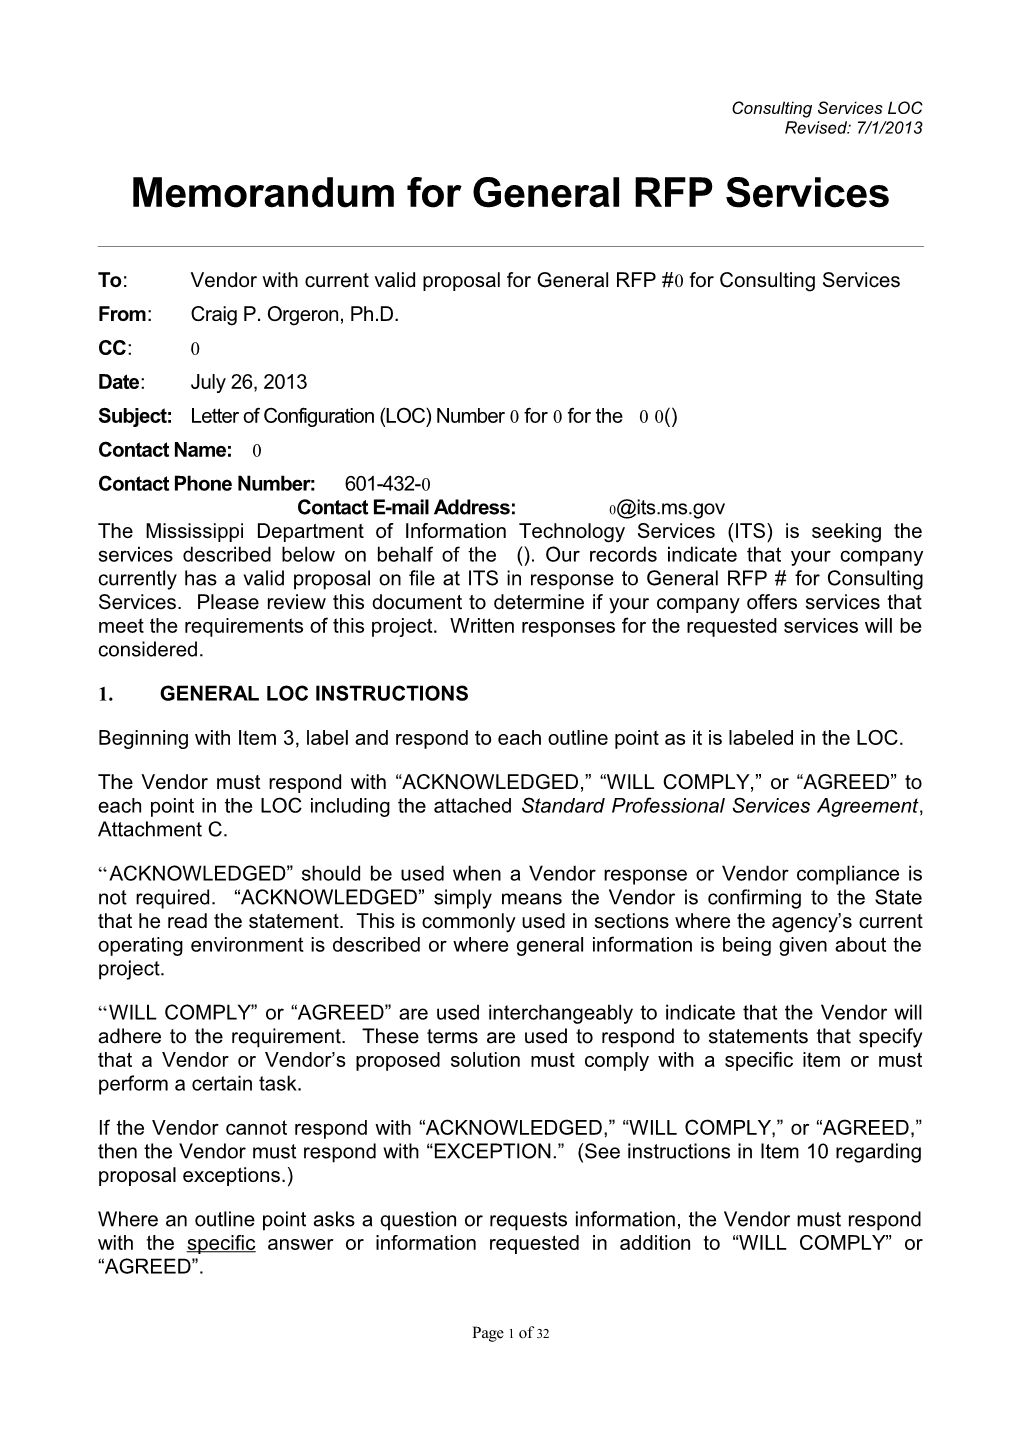 Memorandum for General RFP Configuration s14